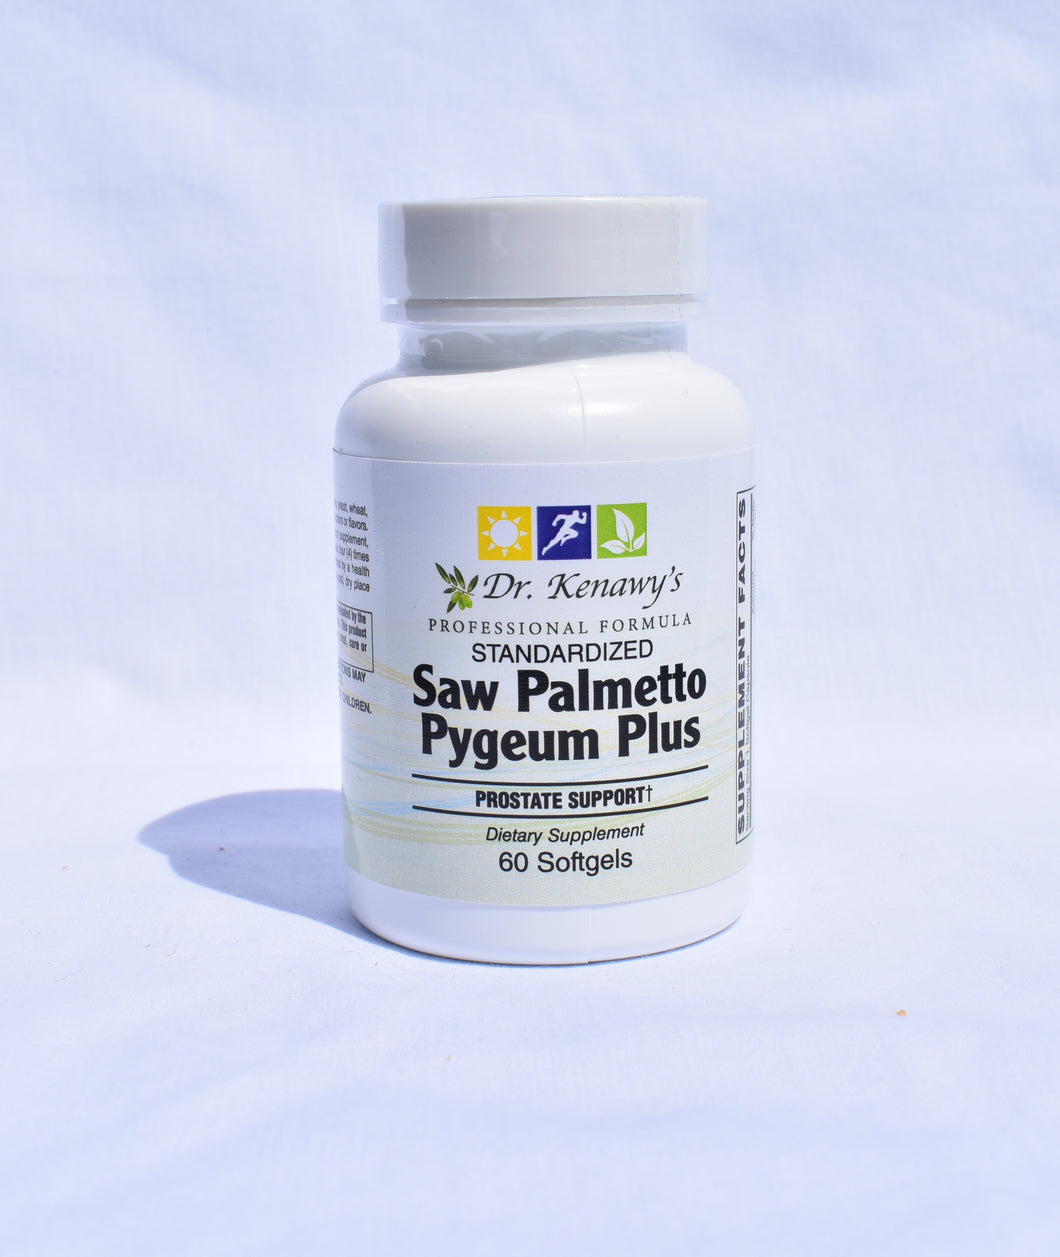 Dr. Kenawy's Saw Palmetto Pygeum Plus